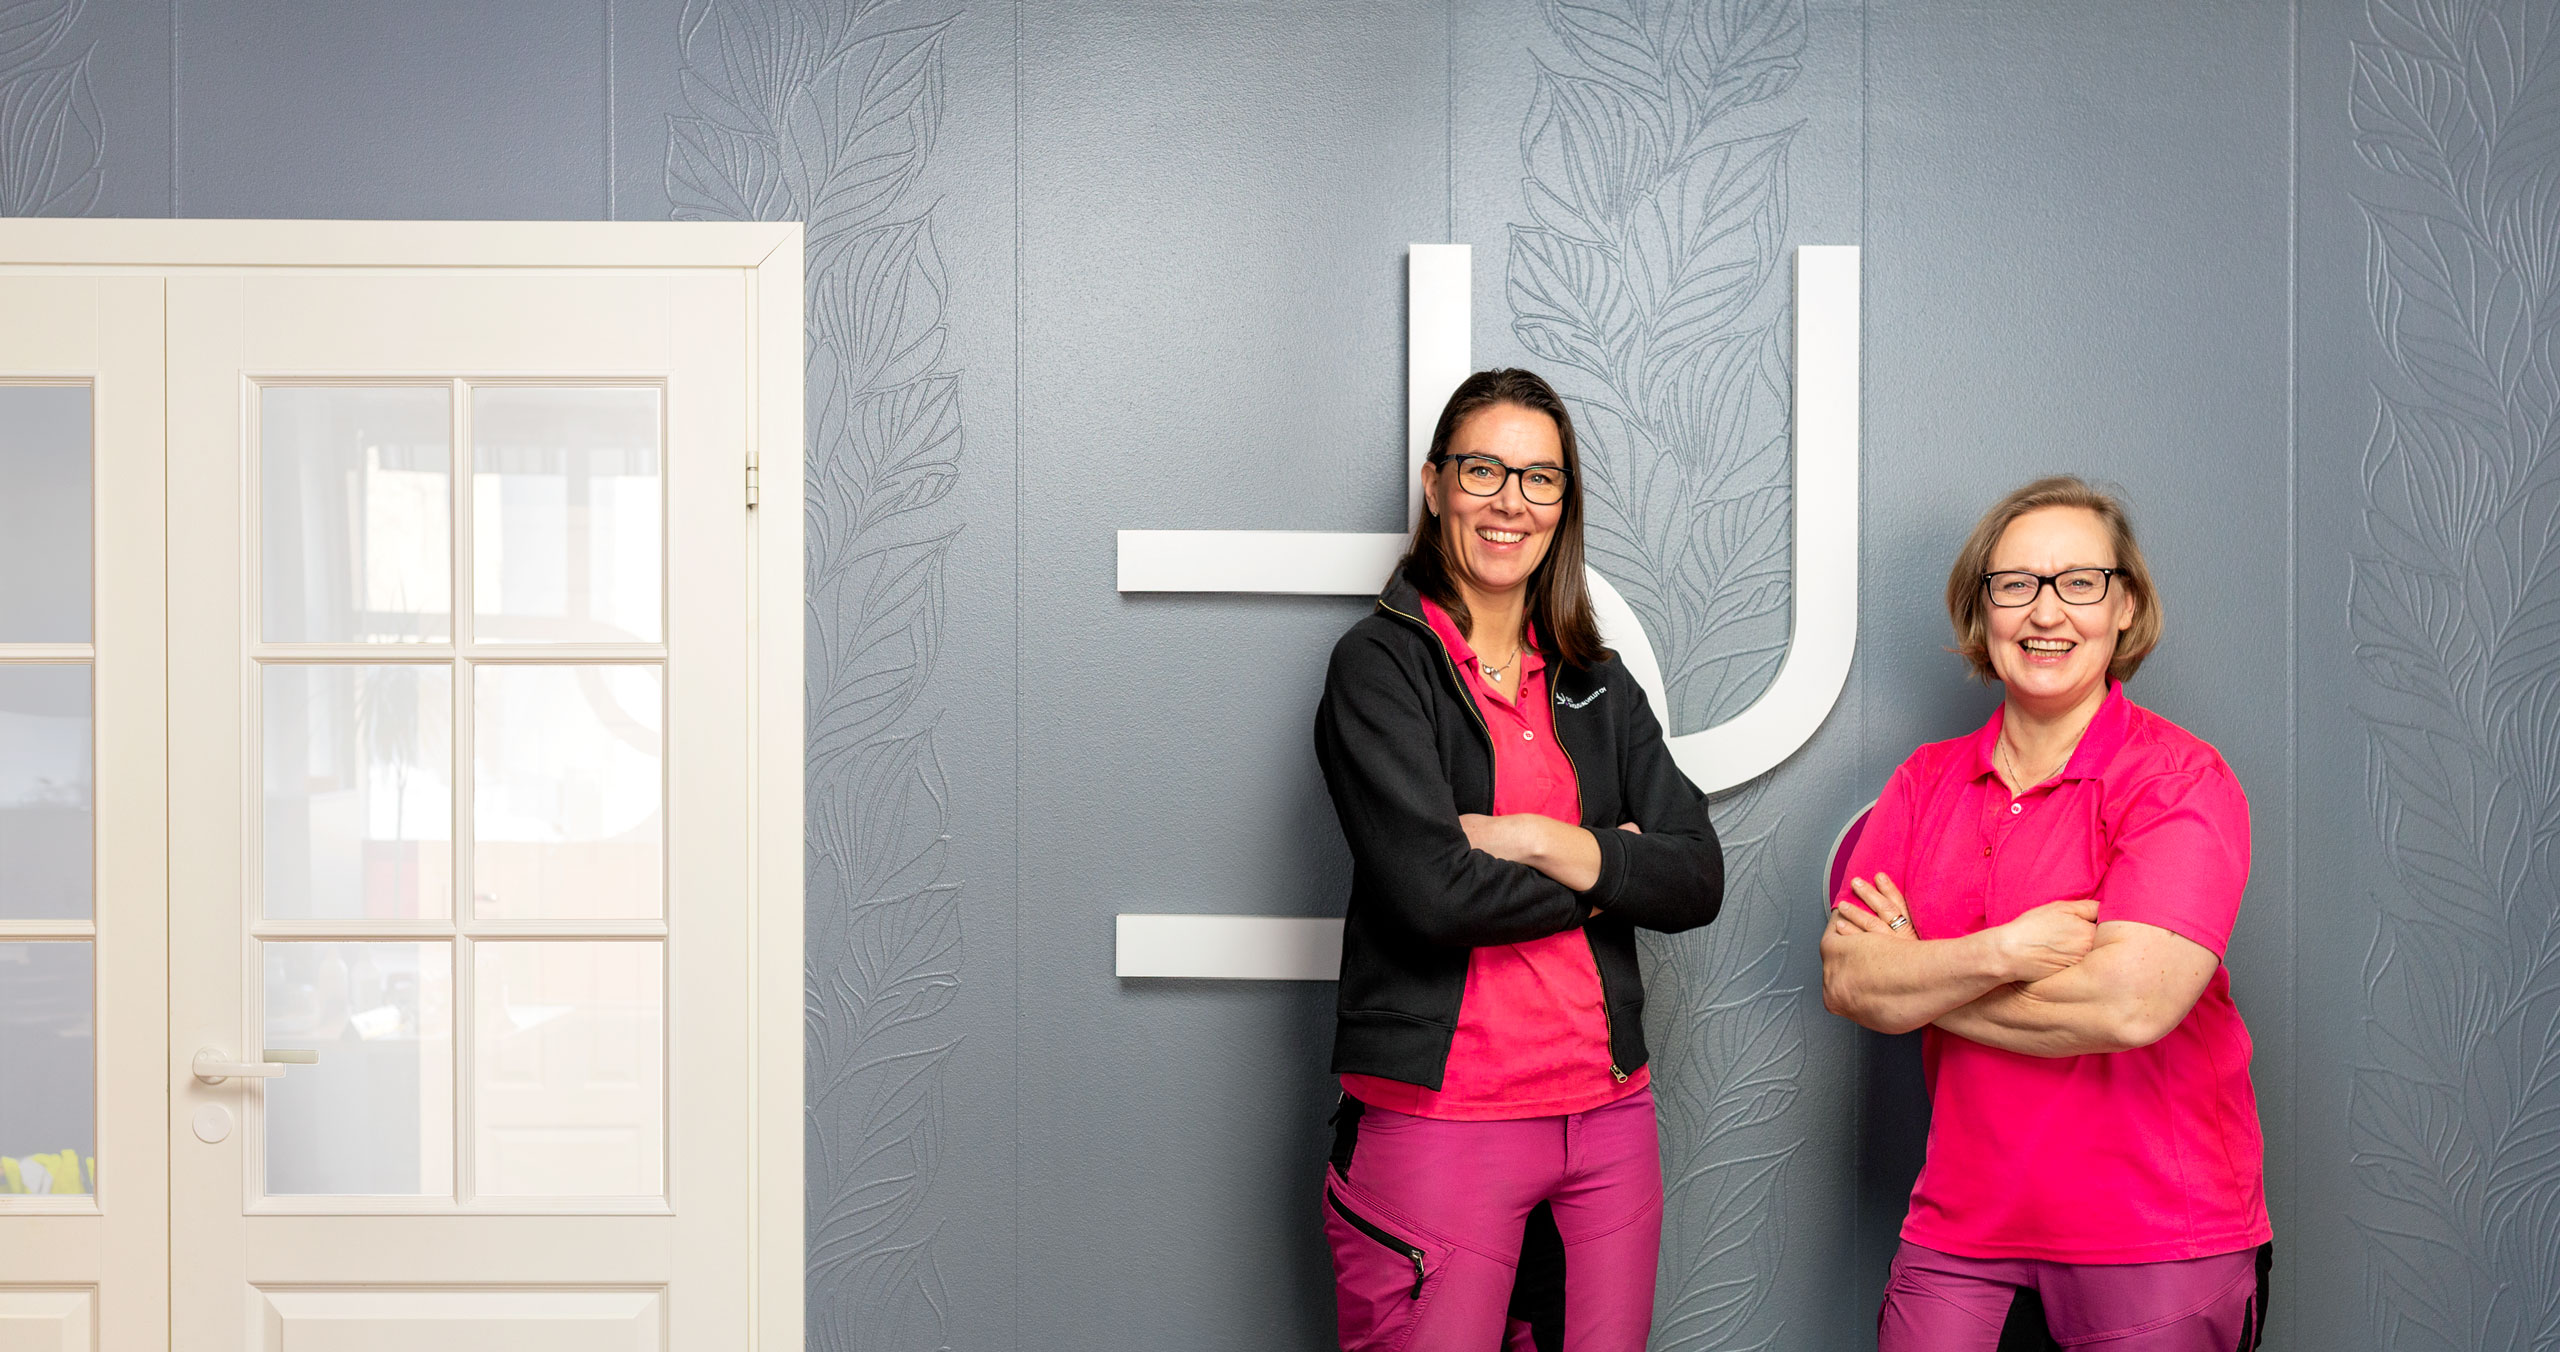 Duo siivouspalvelut Oy:n perustajat, Mari Männistö ja Sanna Kananen seisovat hymyillen kauniin harmaan seinän edessä, jossa on ruutuikkunallinen valkoinen ovi